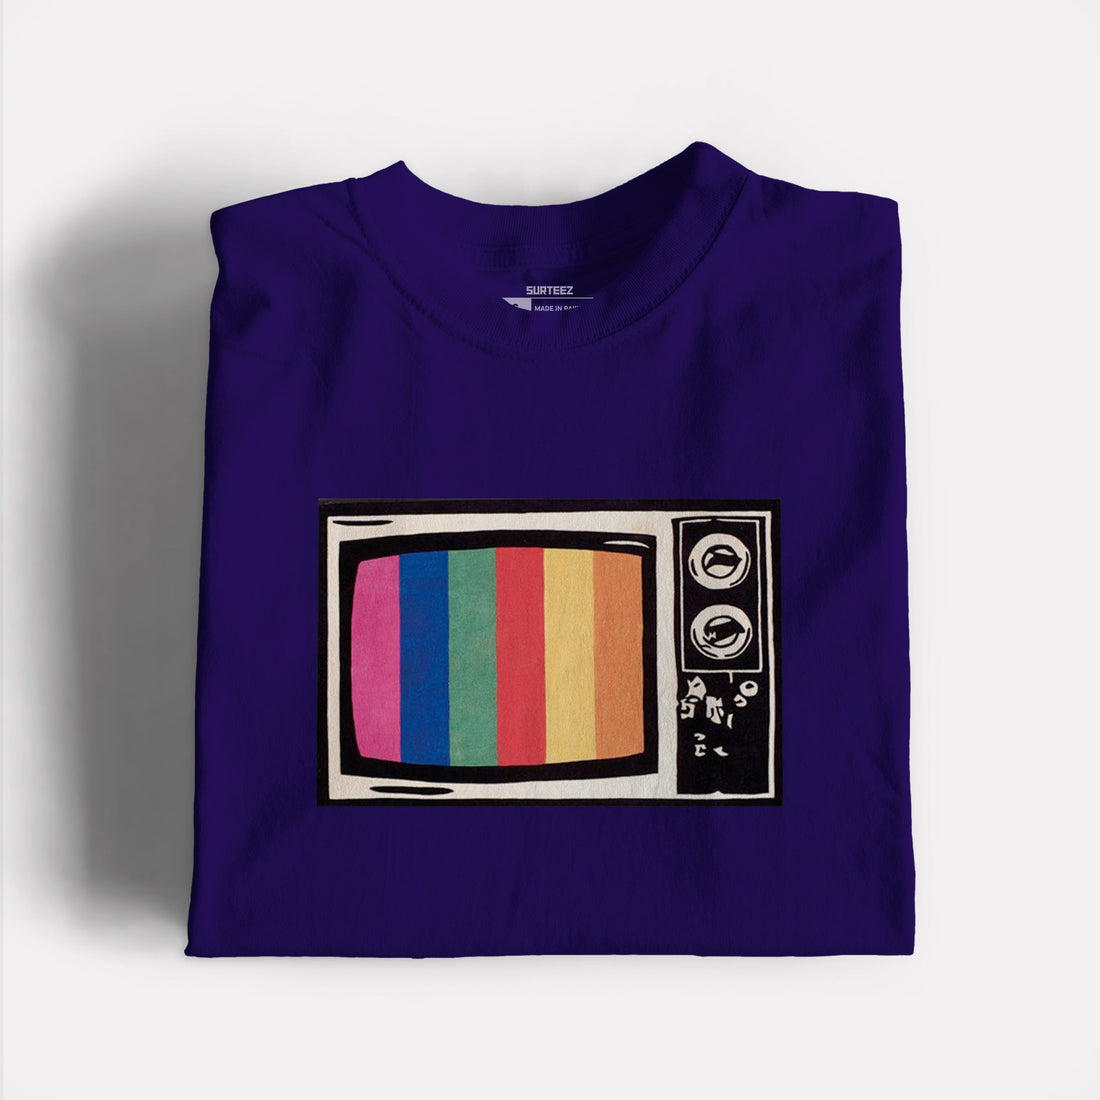 Antique TV Graphic Tshirt